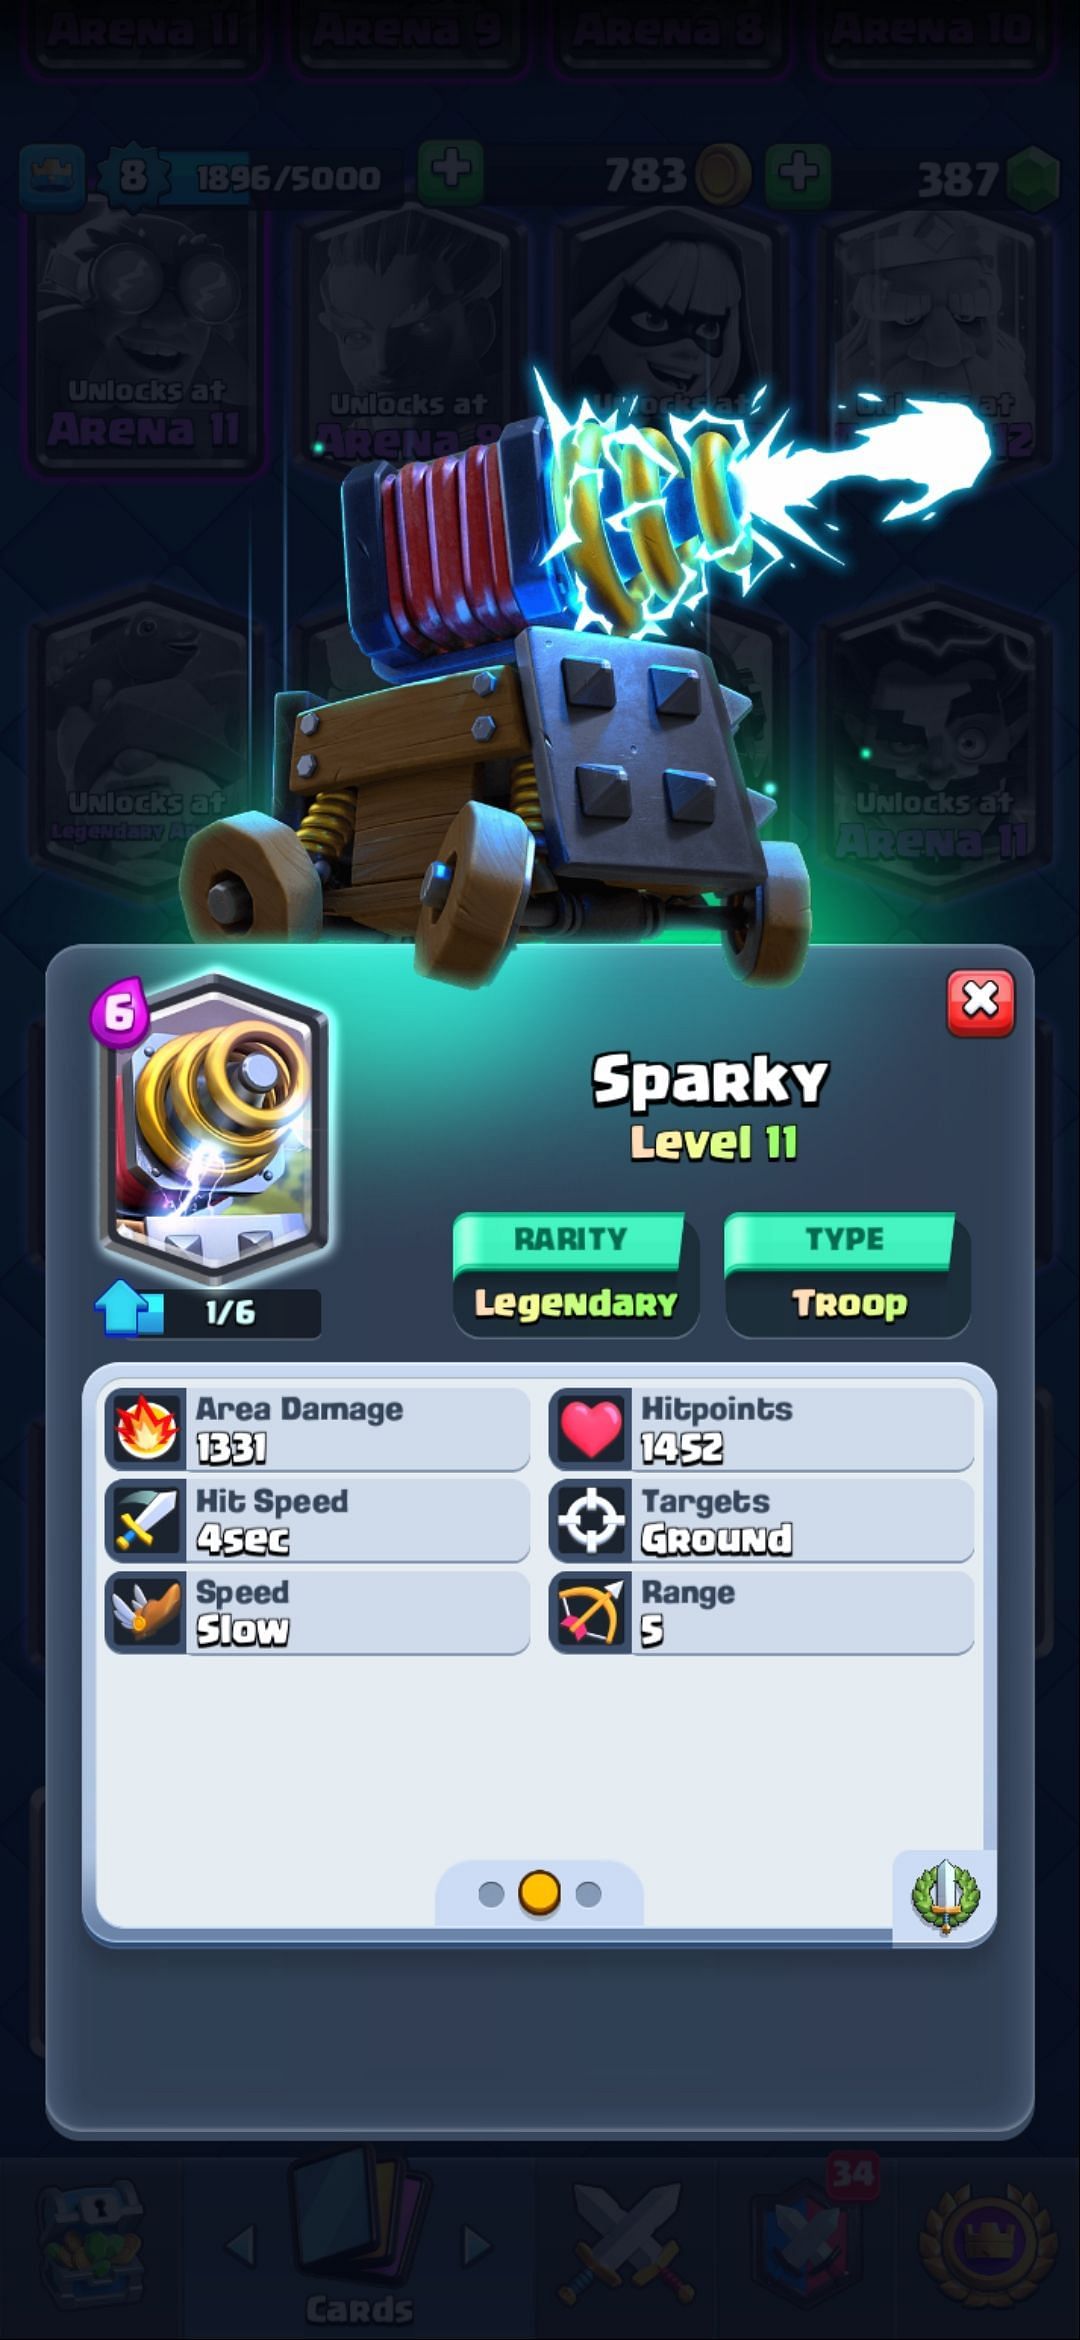 The Sparky card (Image via Sportskeeda)